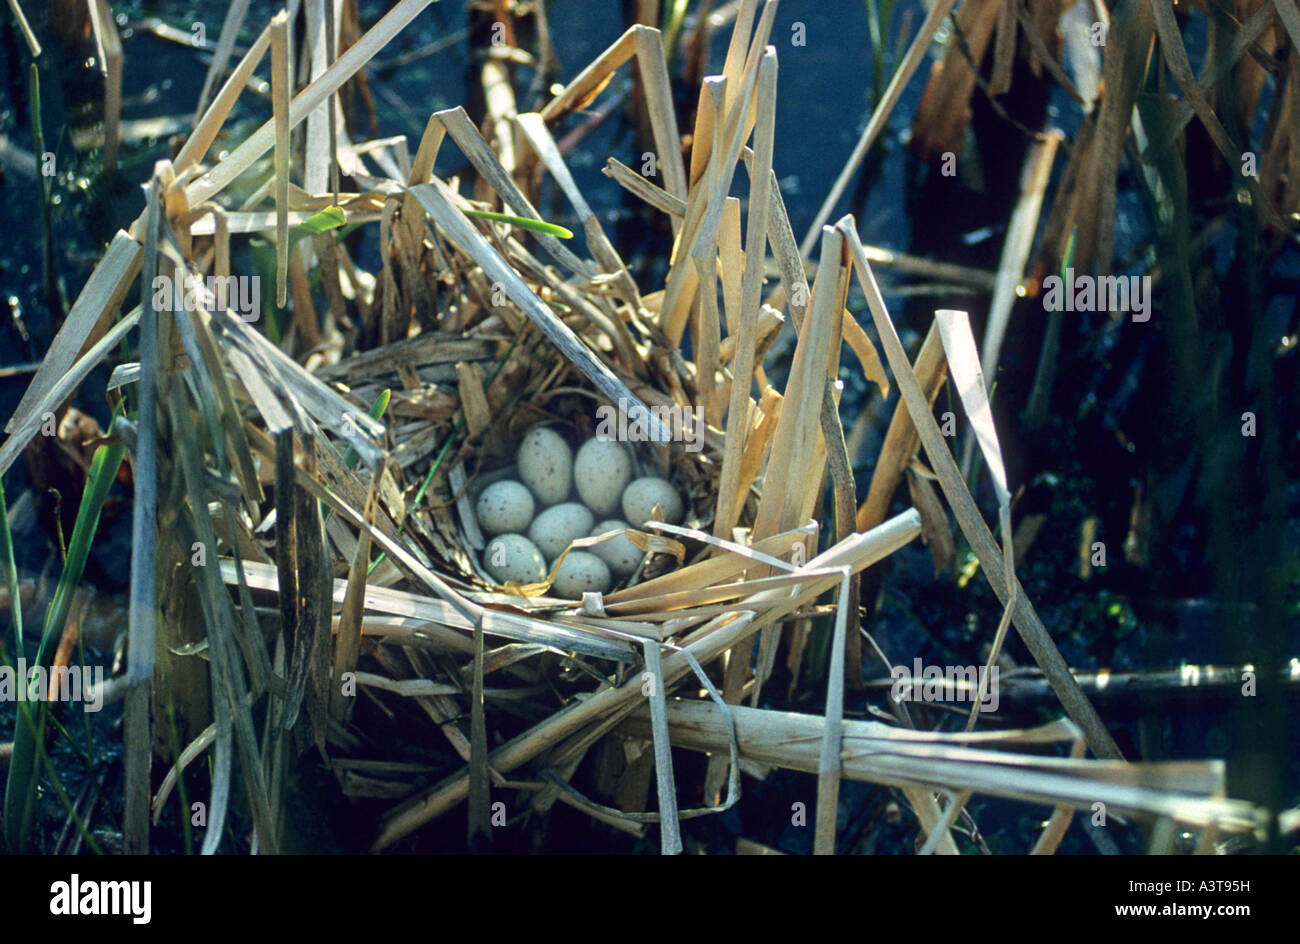 Polla de agua (Gallinula chloropus), huevos en el nido Foto de stock